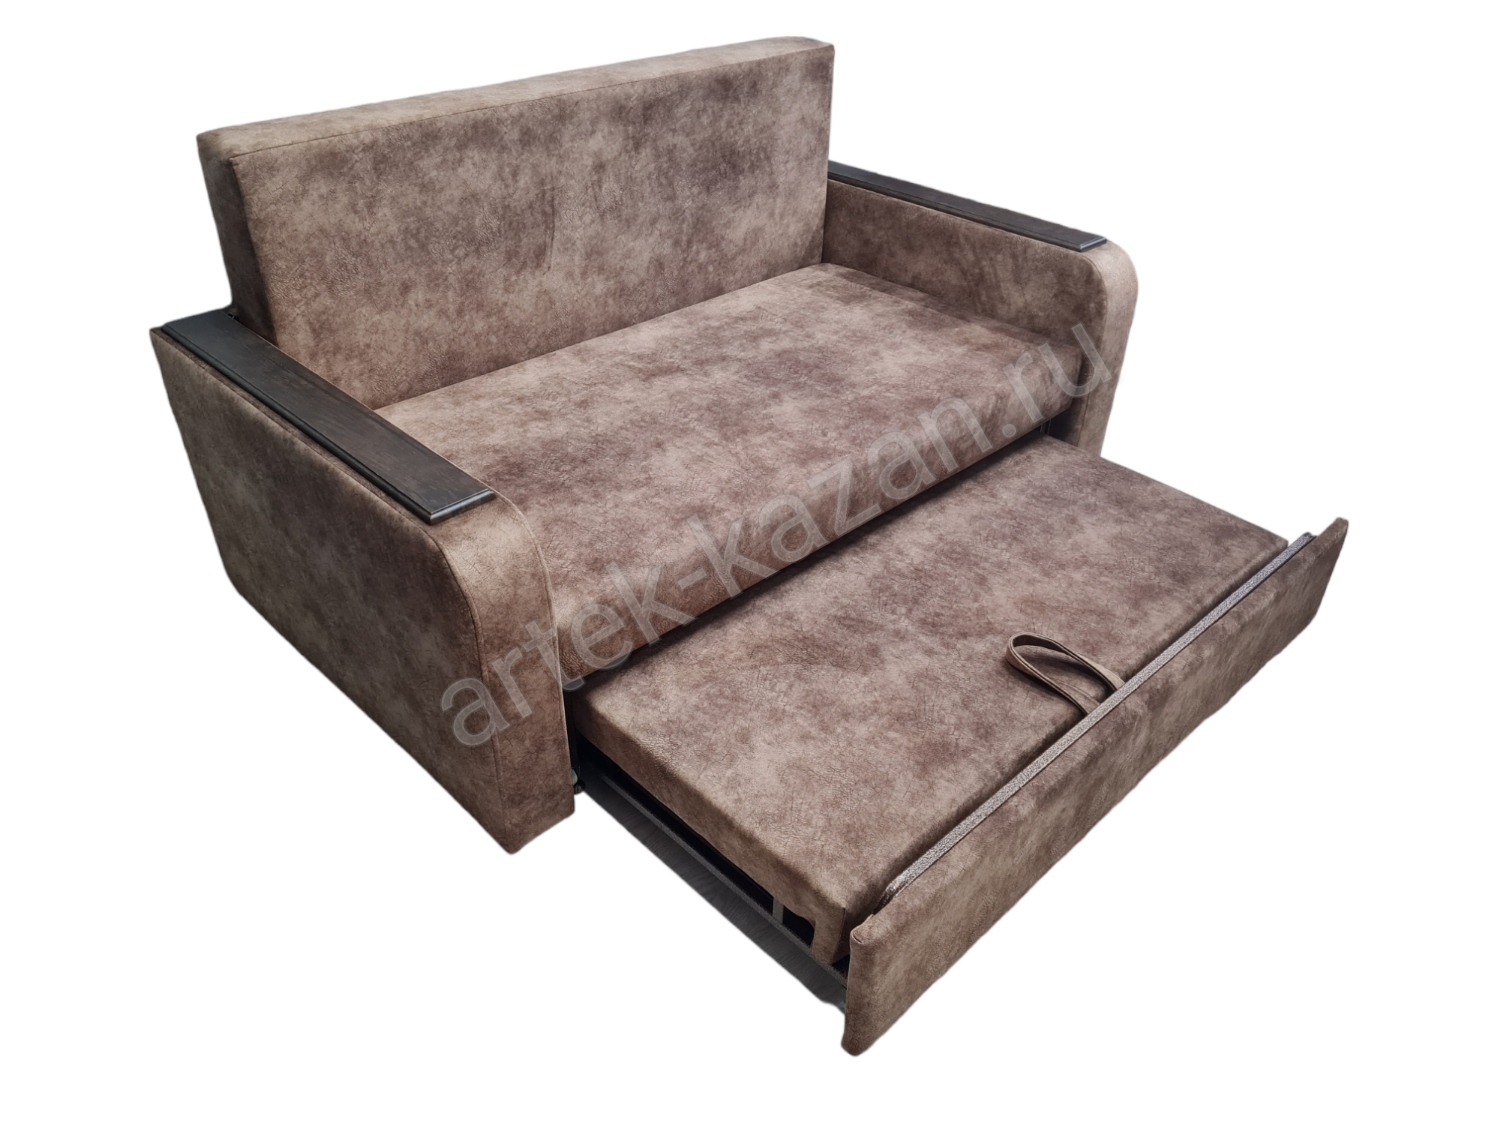 Фото 4. Купить недорогой диван по низкой цене от производителя можно у нас.